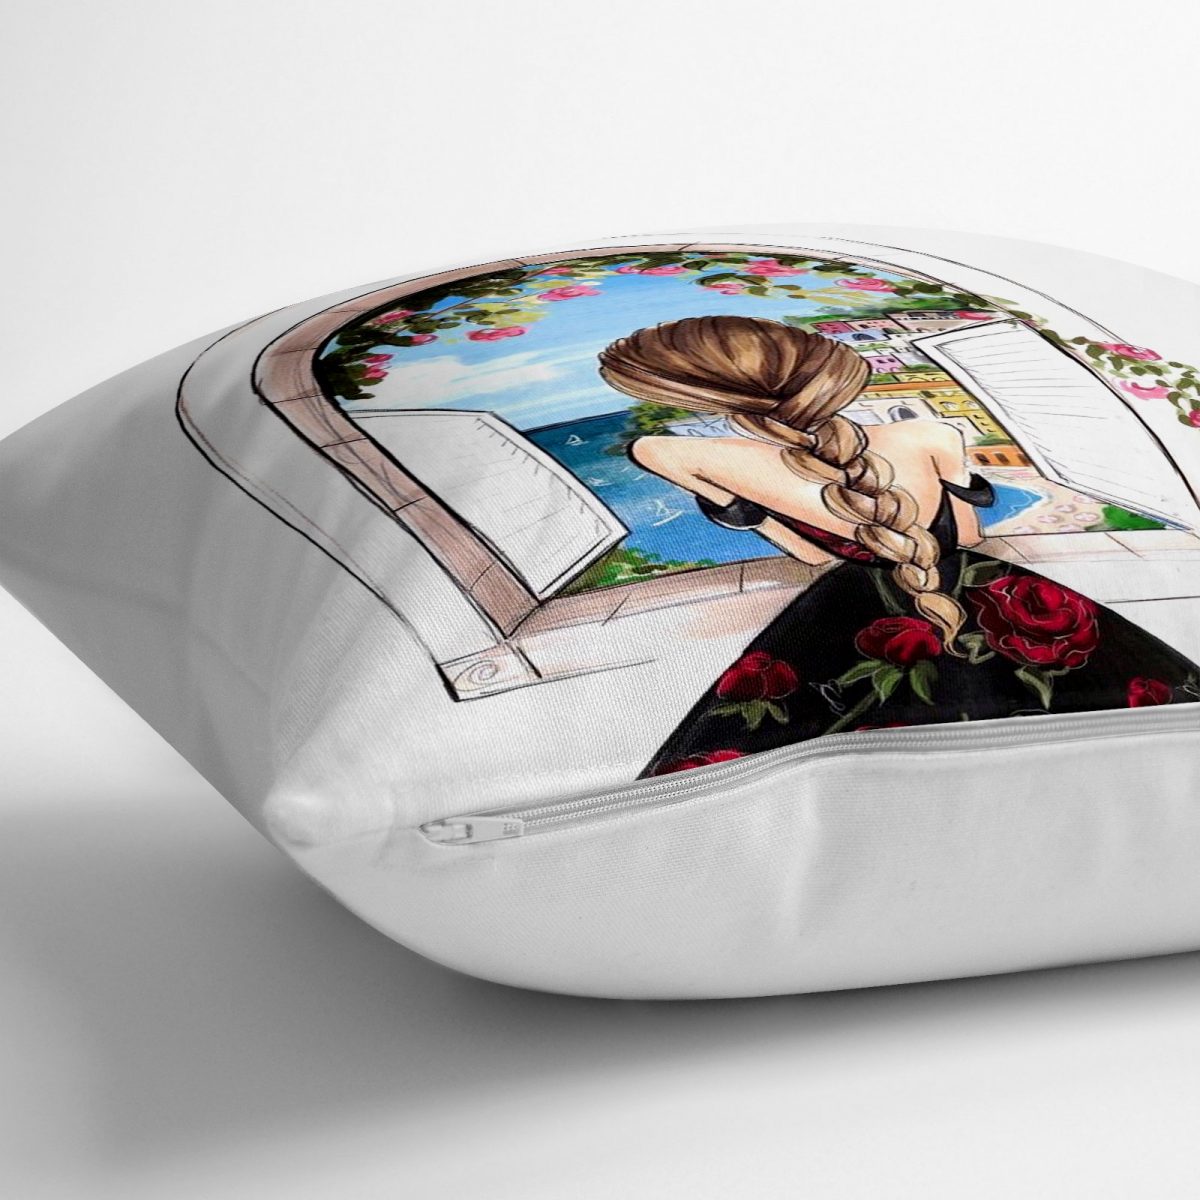 Mutluluk Manzarası Suluboya Çizimli Özel Tasarım Dekoratif Yer Minderi - 70 x 70 cm Realhomes